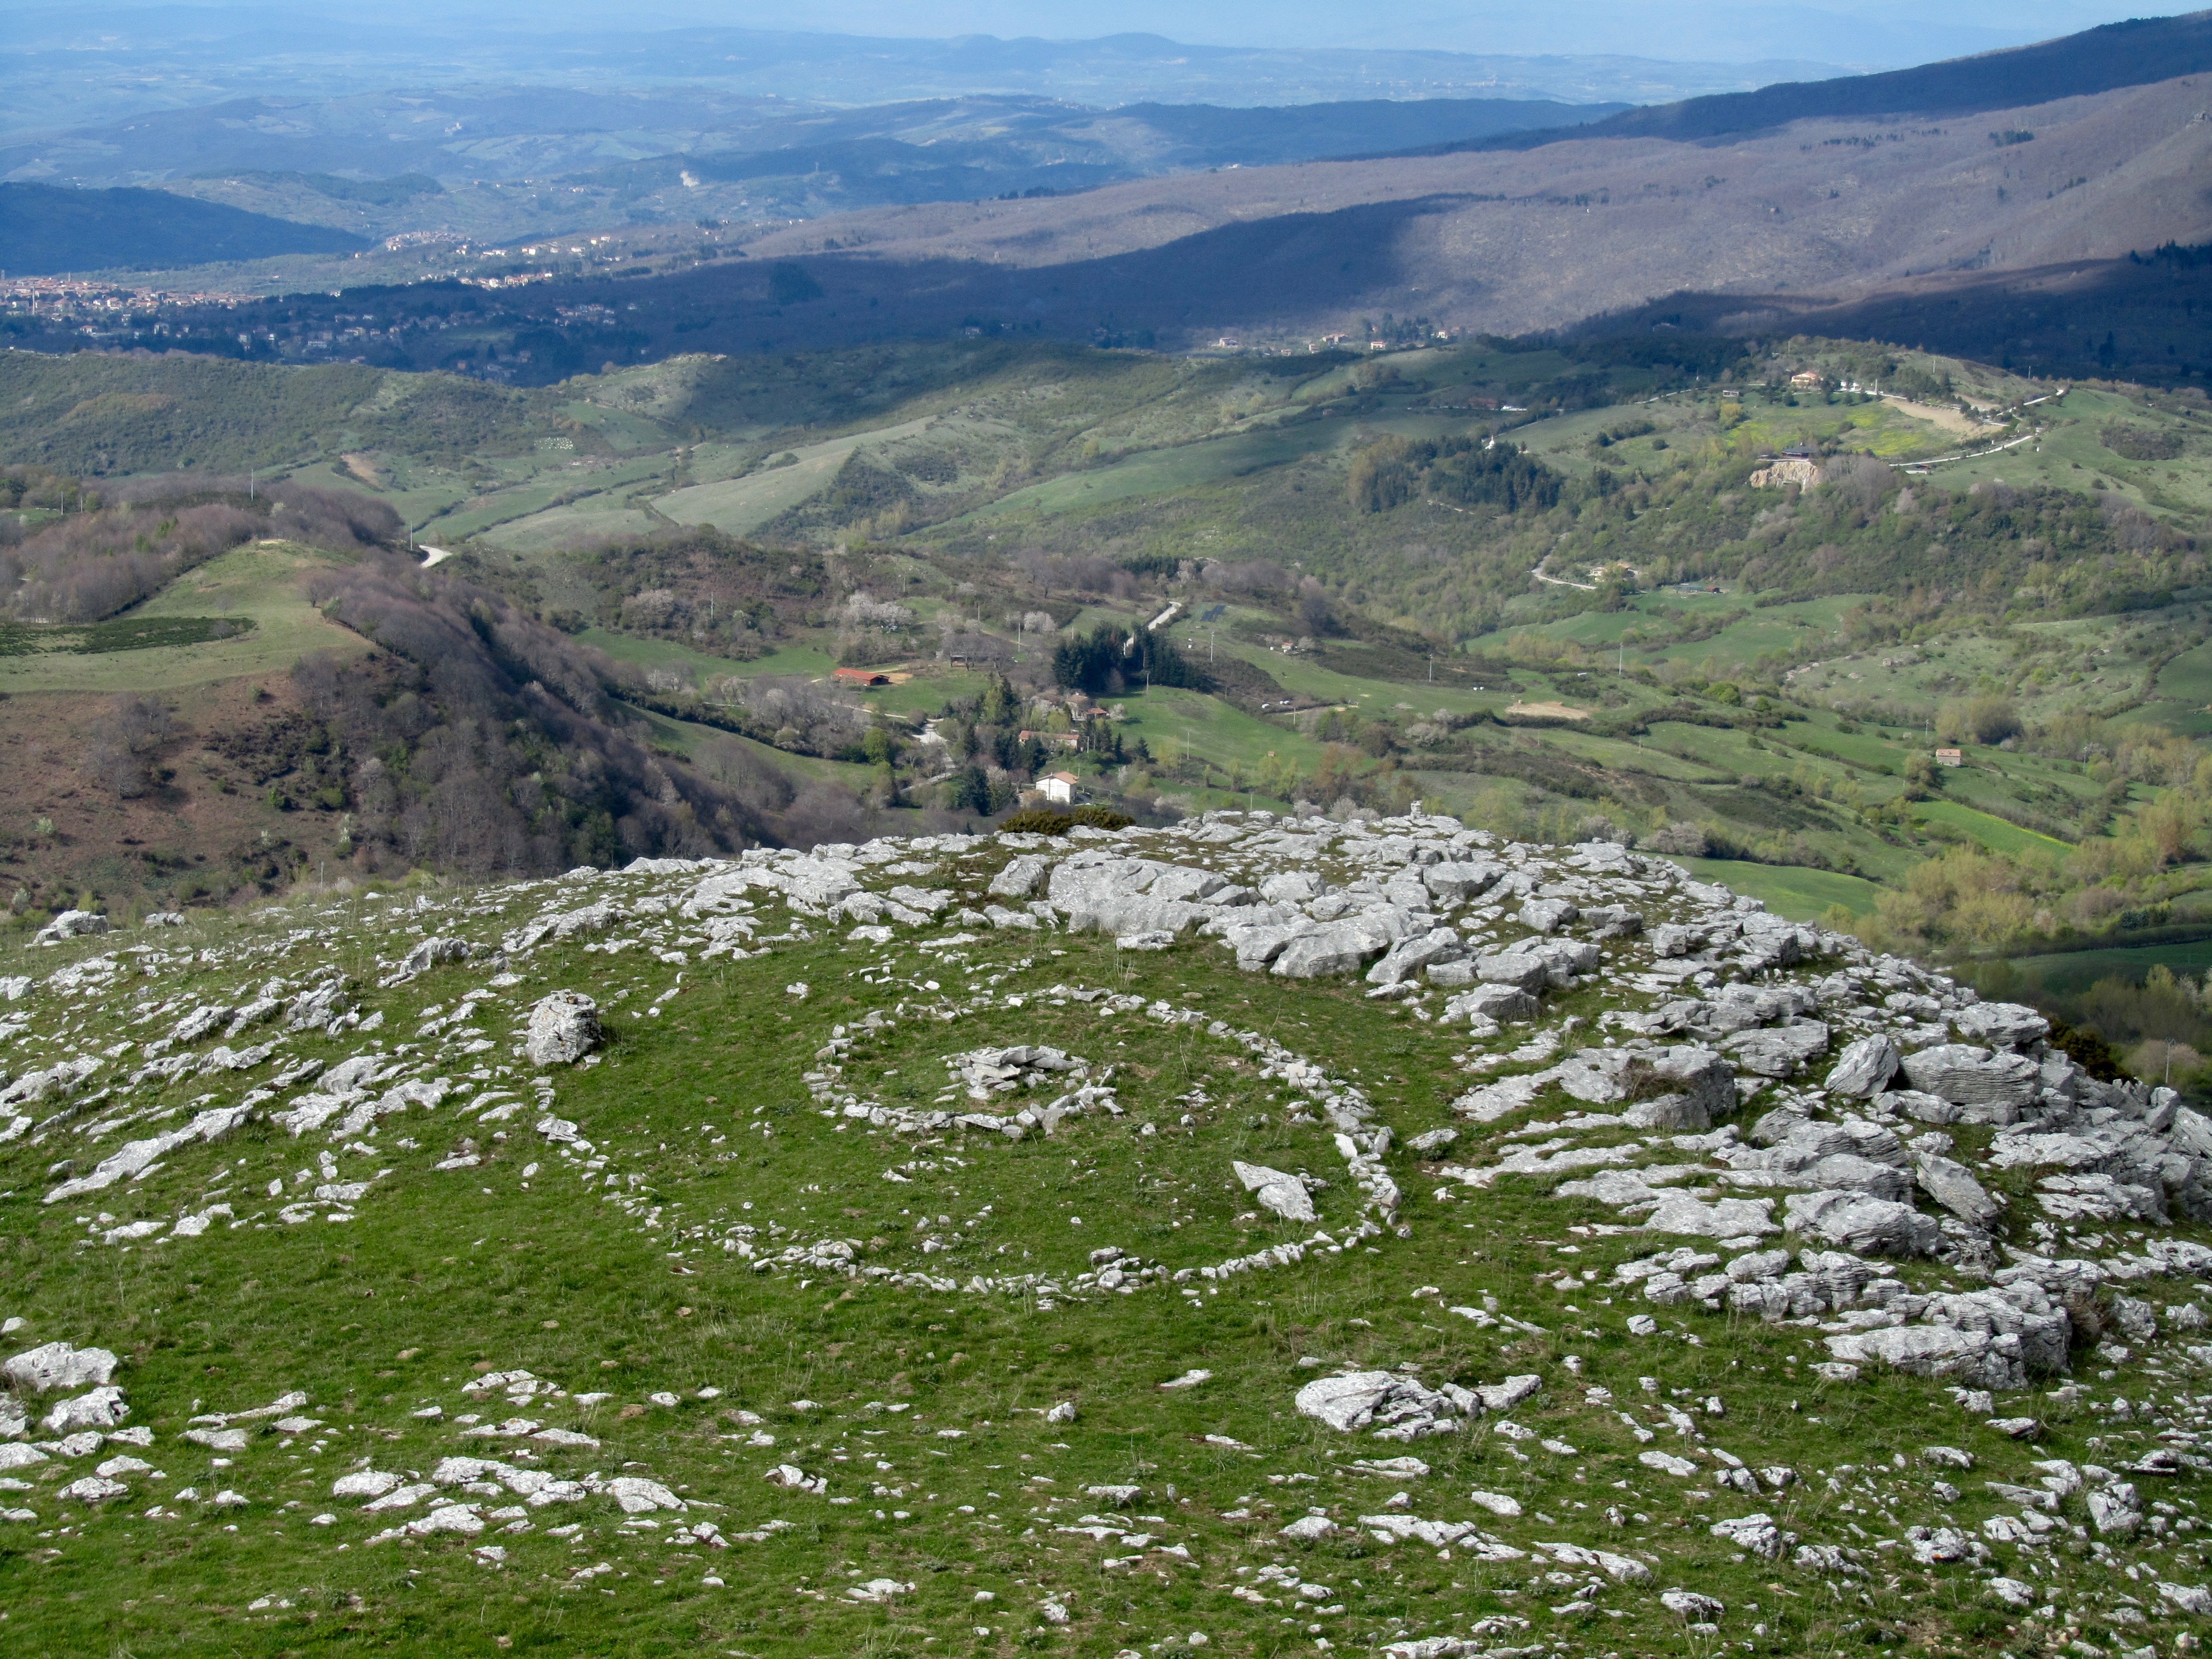 Monte Labbro: the spiral under the tower